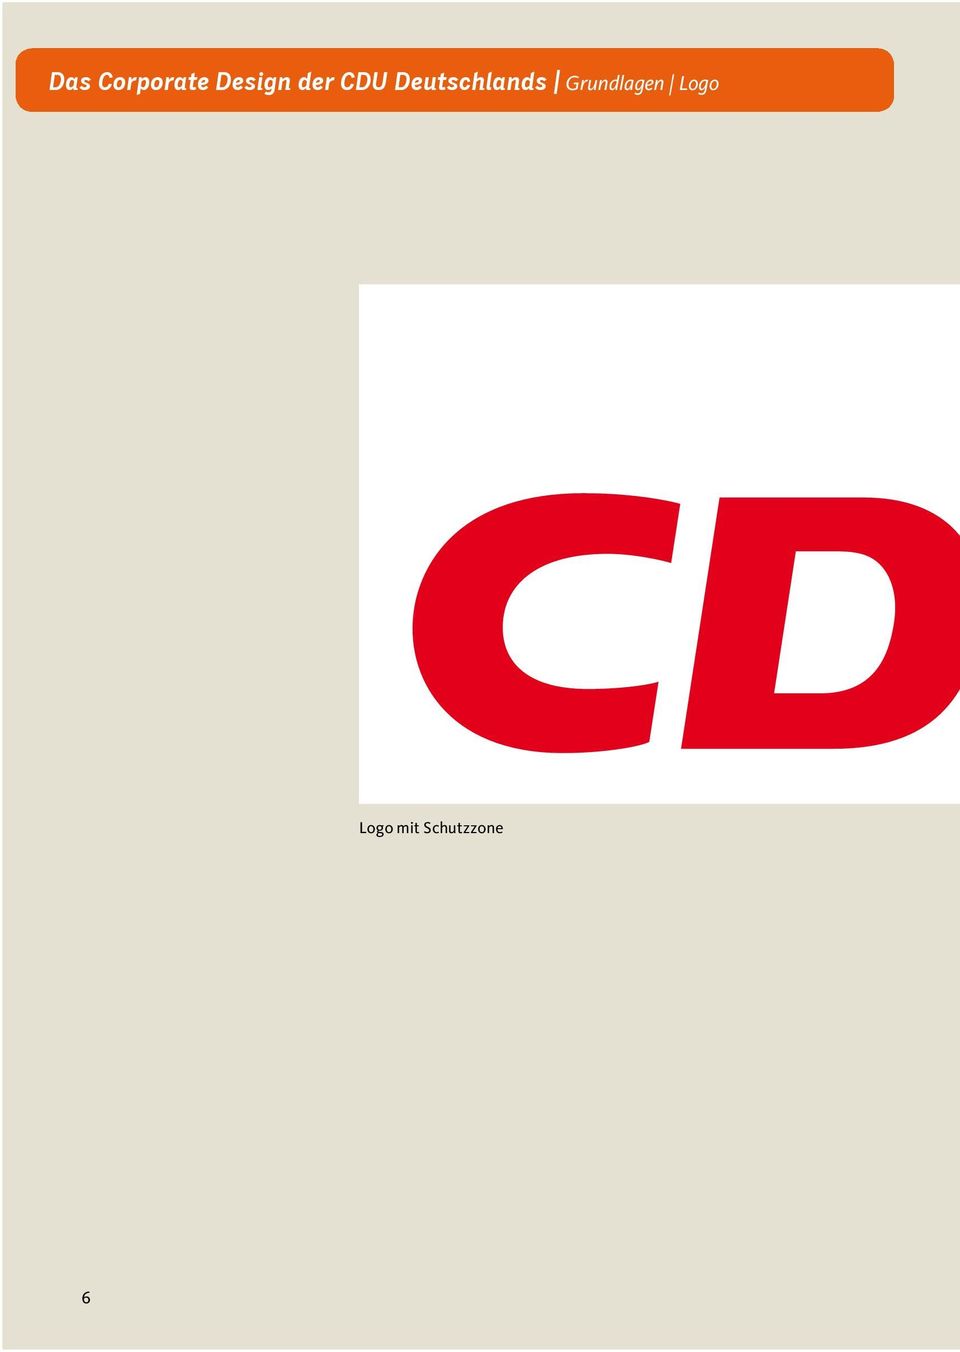 Das Corporate Design Der Cdu Deutschlands Das Visuelle Erscheinungsbild Pdf Kostenfreier Download